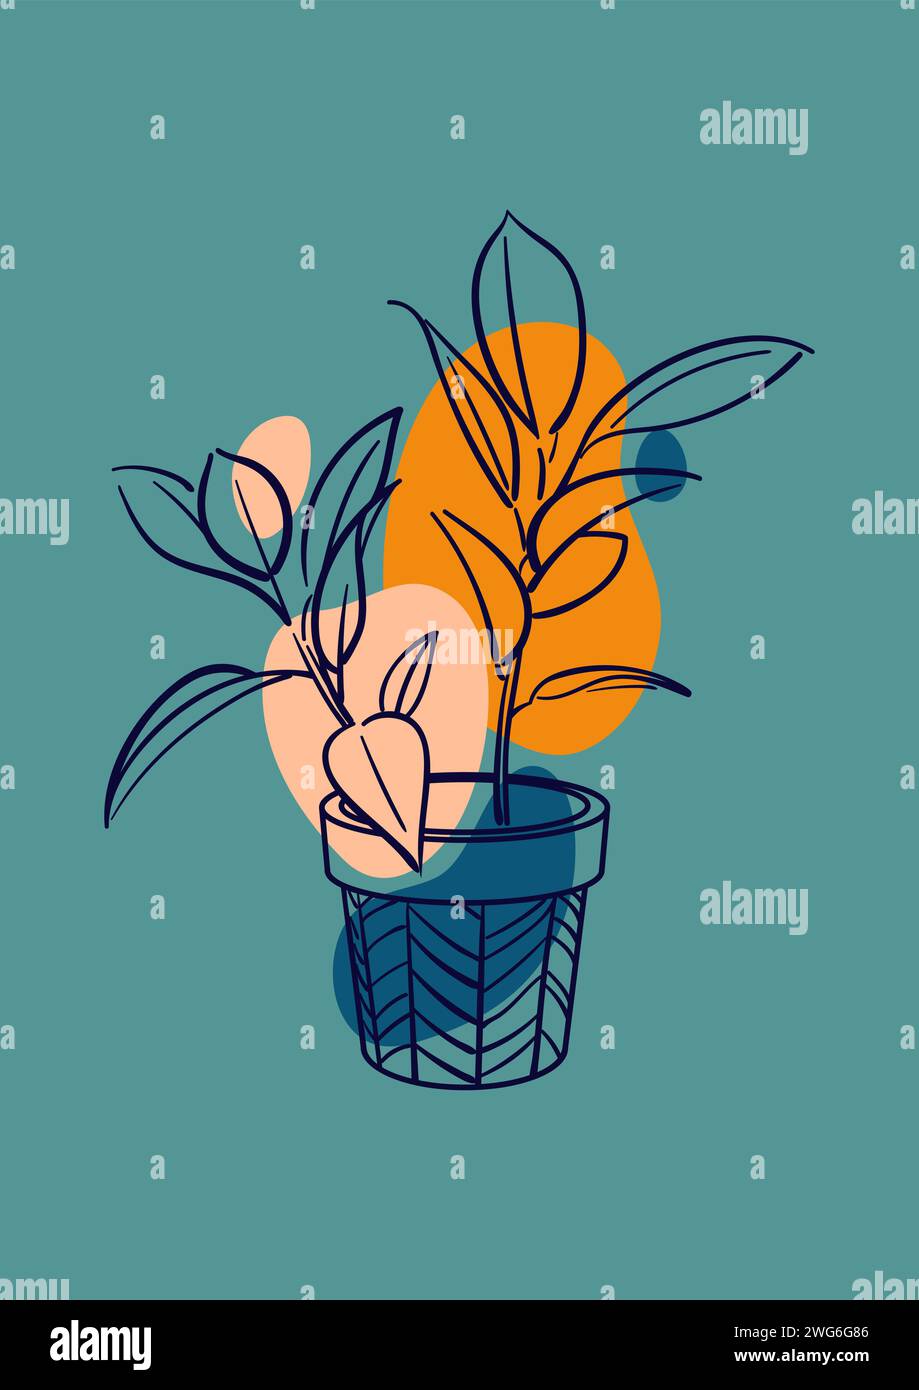 Ficus Rubber elastica Belize, Tineke. Pianta esotica in un vaso. Floricoltura domestica, piante domestiche, hobby. Illustrazione vettoriale botanica disegnata a mano Illustrazione Vettoriale